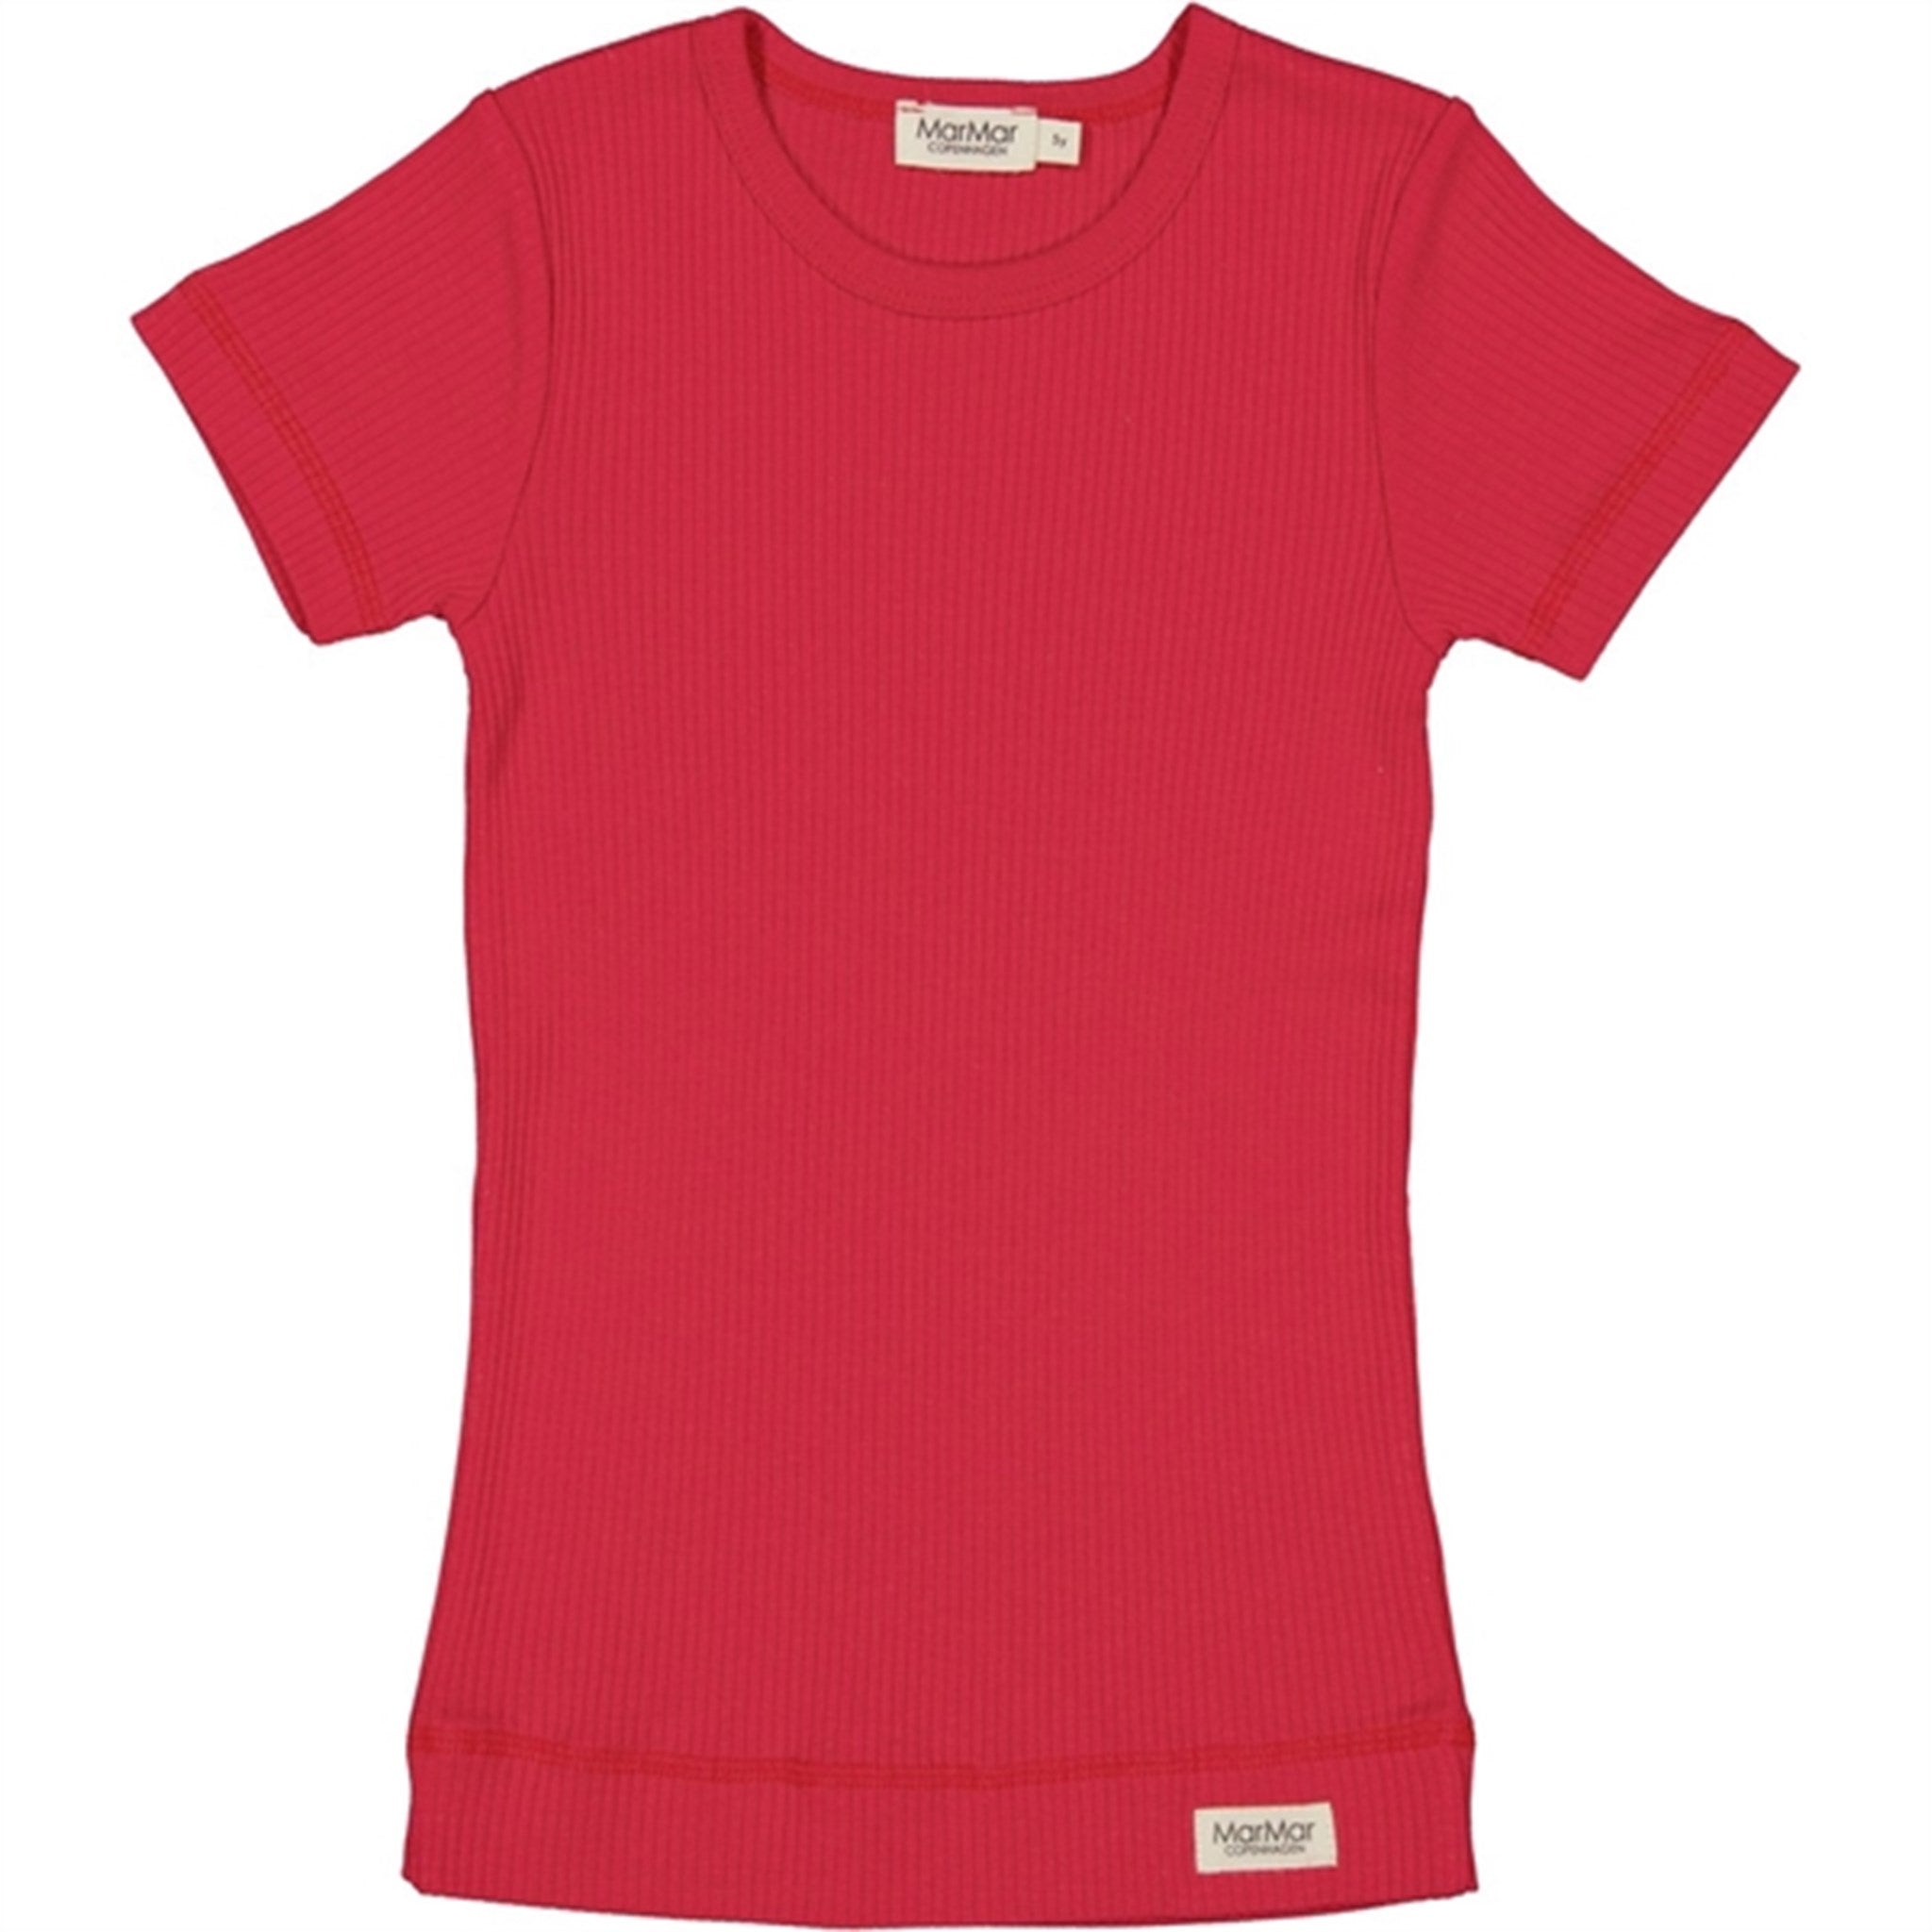 MarMar Modal Red Currant T-shirt Plain